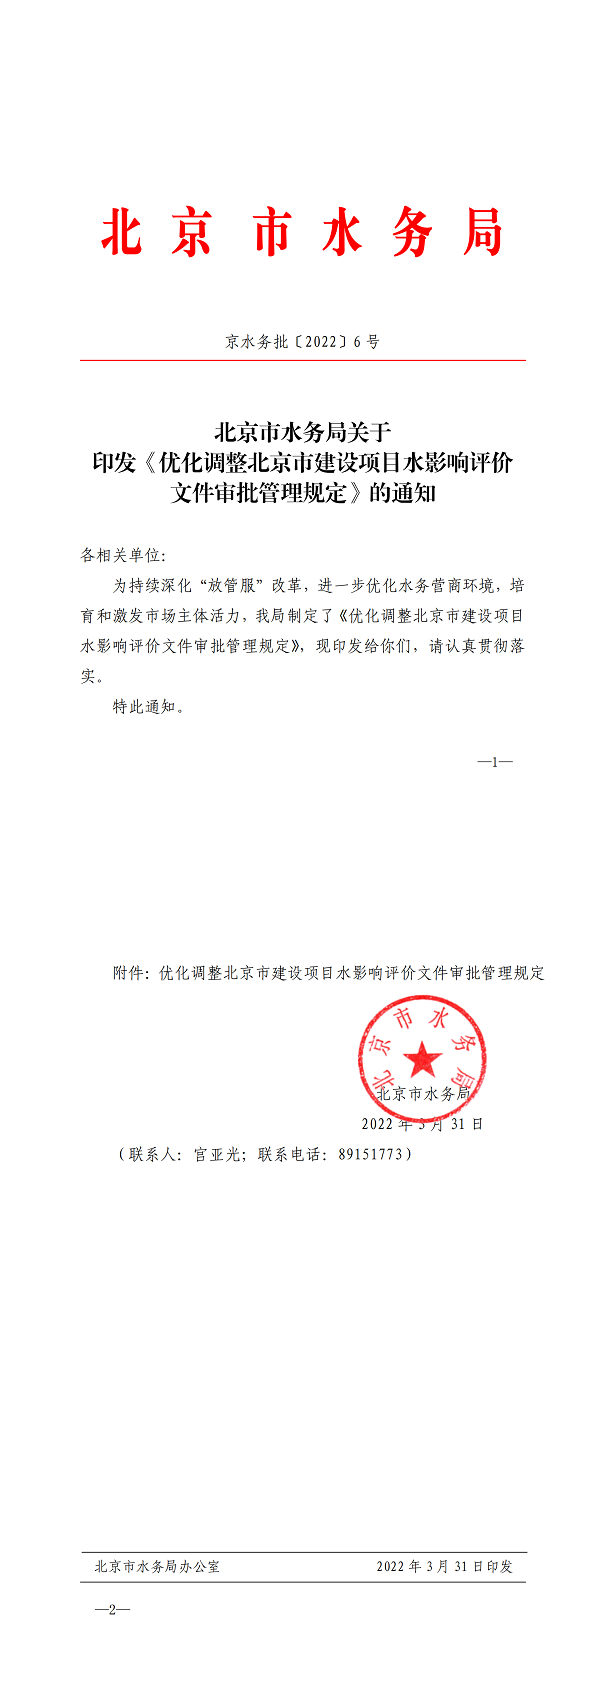 北京市水务局关于印发《优化调整北京市建设项目水影响评价文件审批管理规定》的通知(1)_00.png